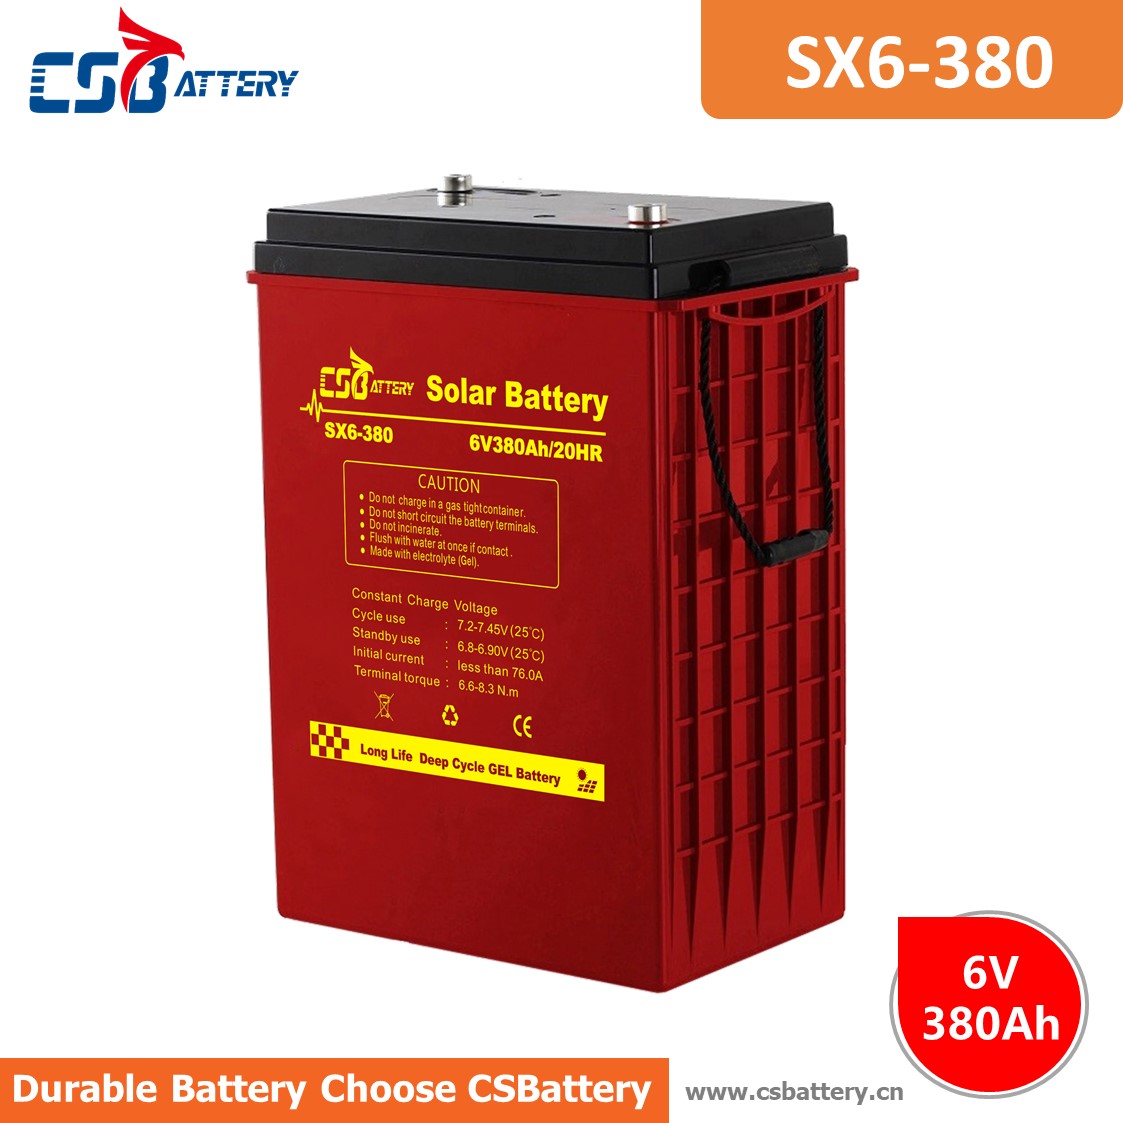 SX6-380 6V 380Ah akumulator żelowy o głębokim cyklu
